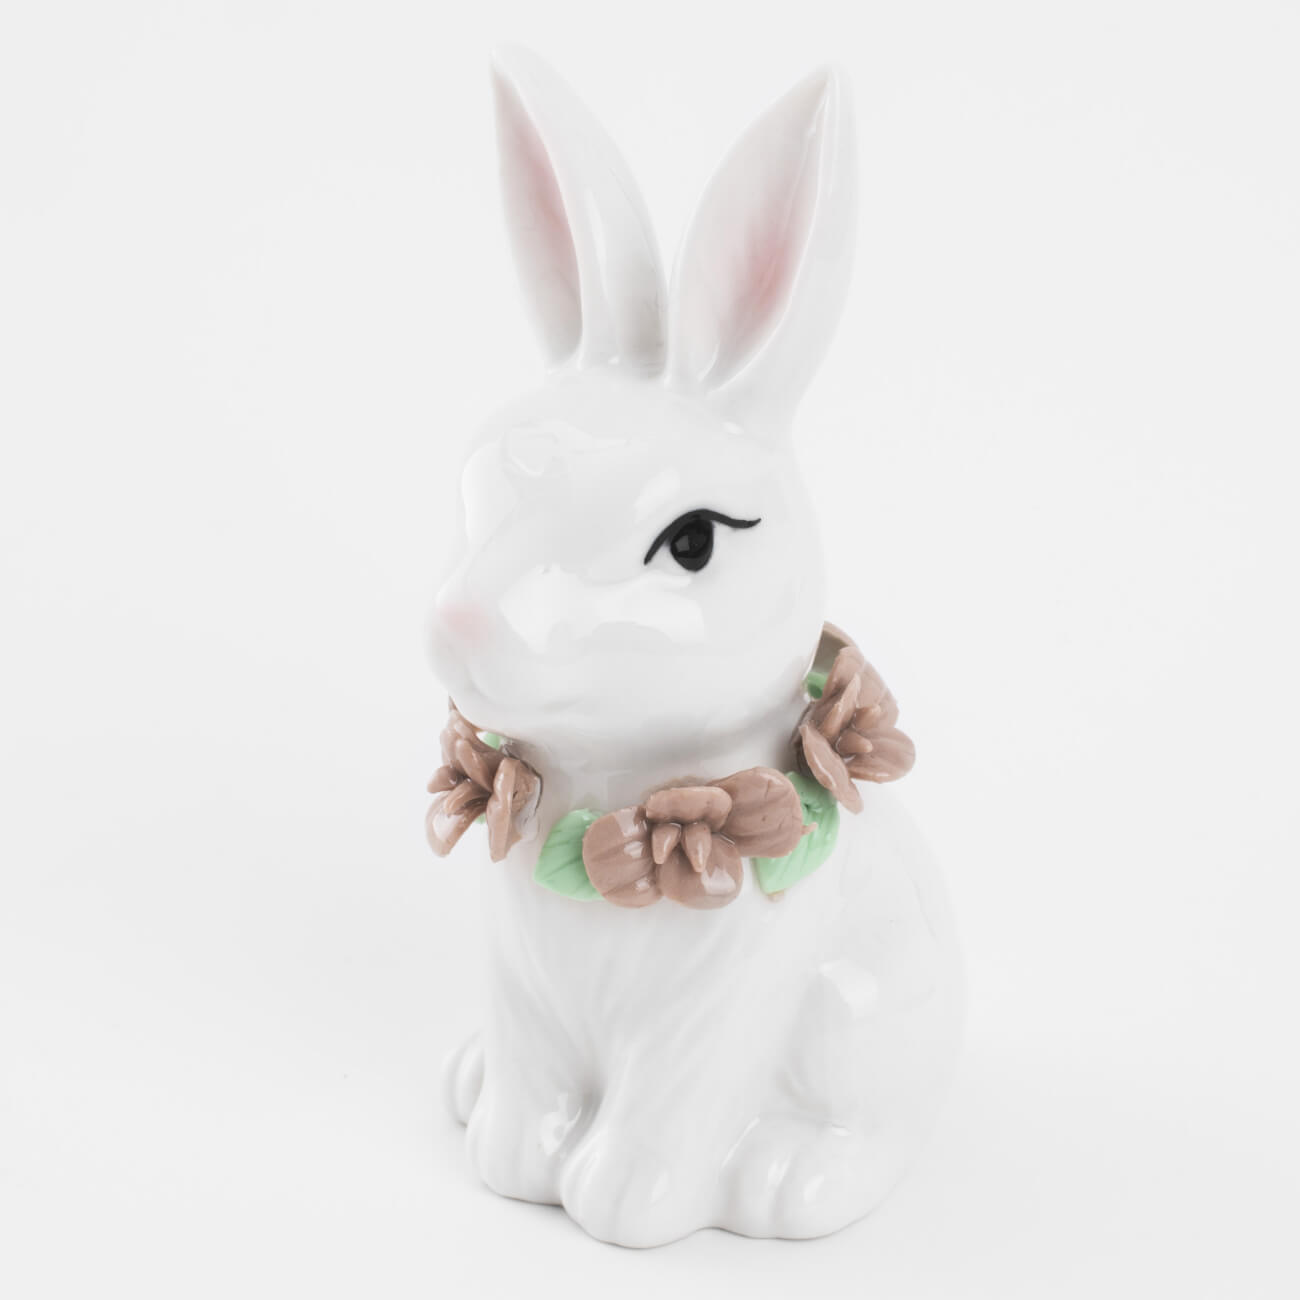 Статуэтка, 12 см, фарфор P, белая, Кролик в цветах, Easter blooming статуэтка 14 см фарфор p бежевая кролик сидит natural easter